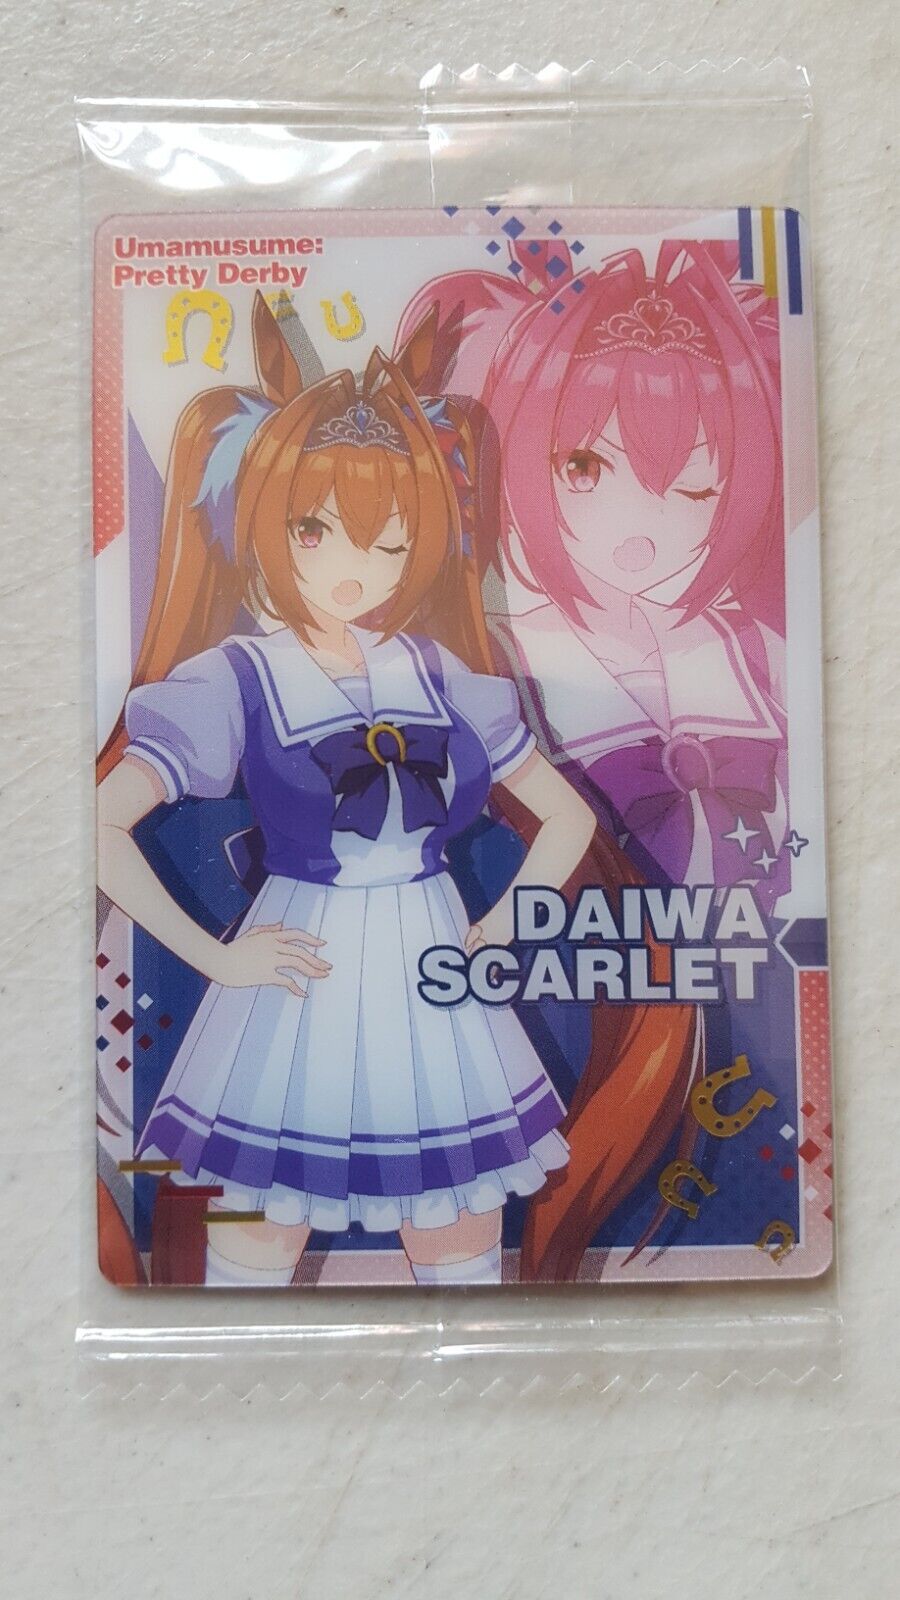 Bandai Wafer Card - Uma Musume: Pretty Derby - Daiwa Scarlet